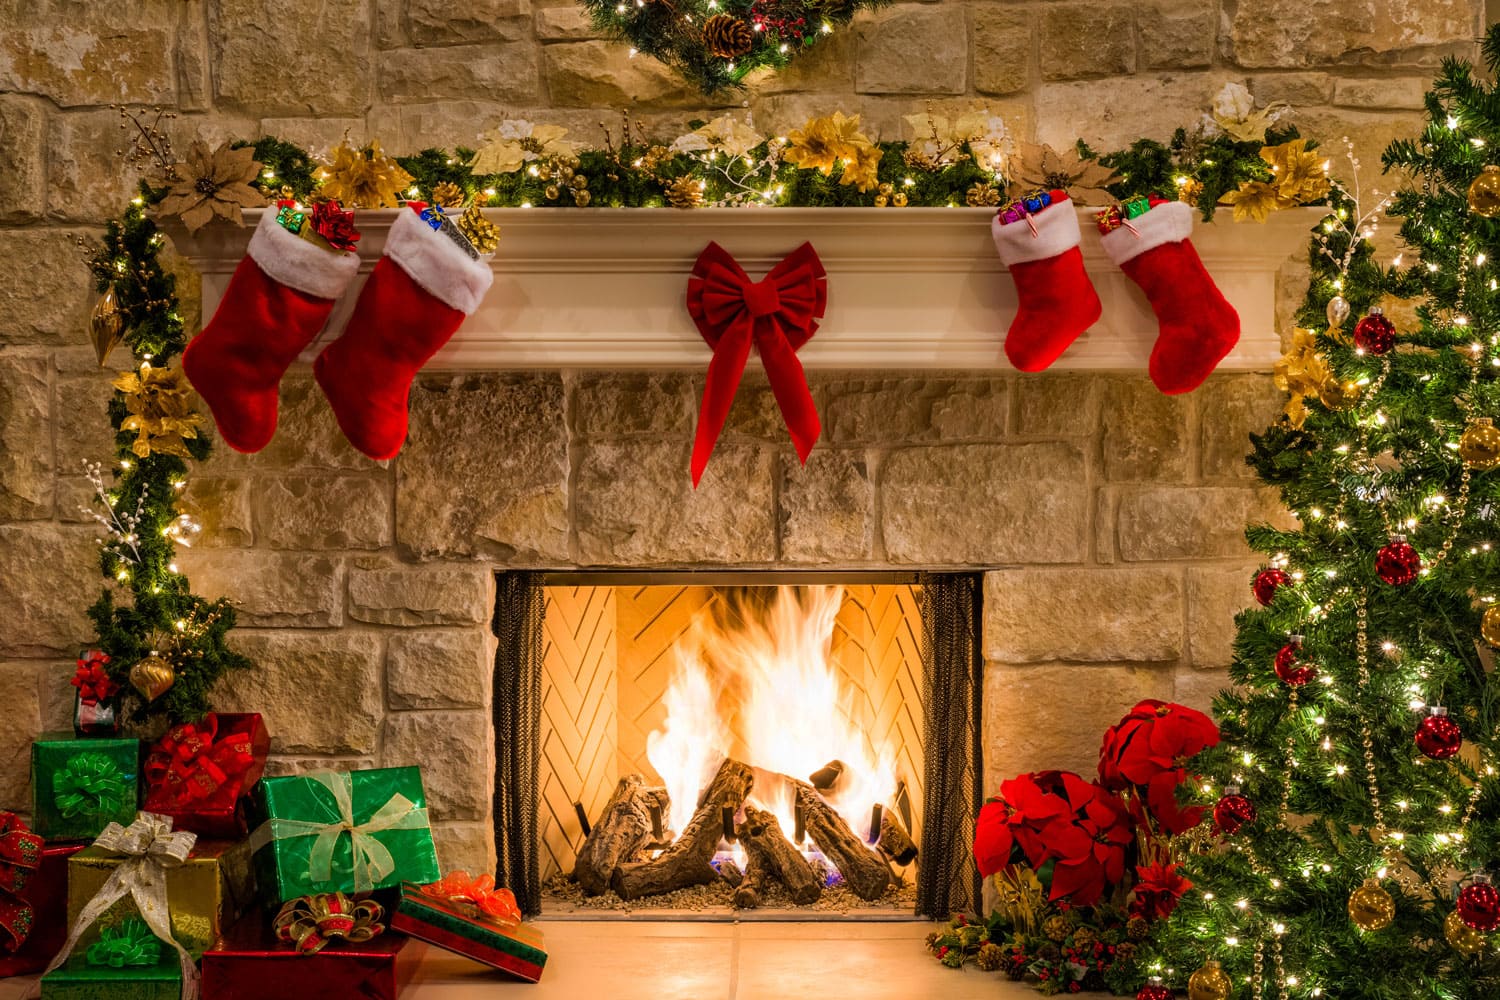 Christmas theme fireplace